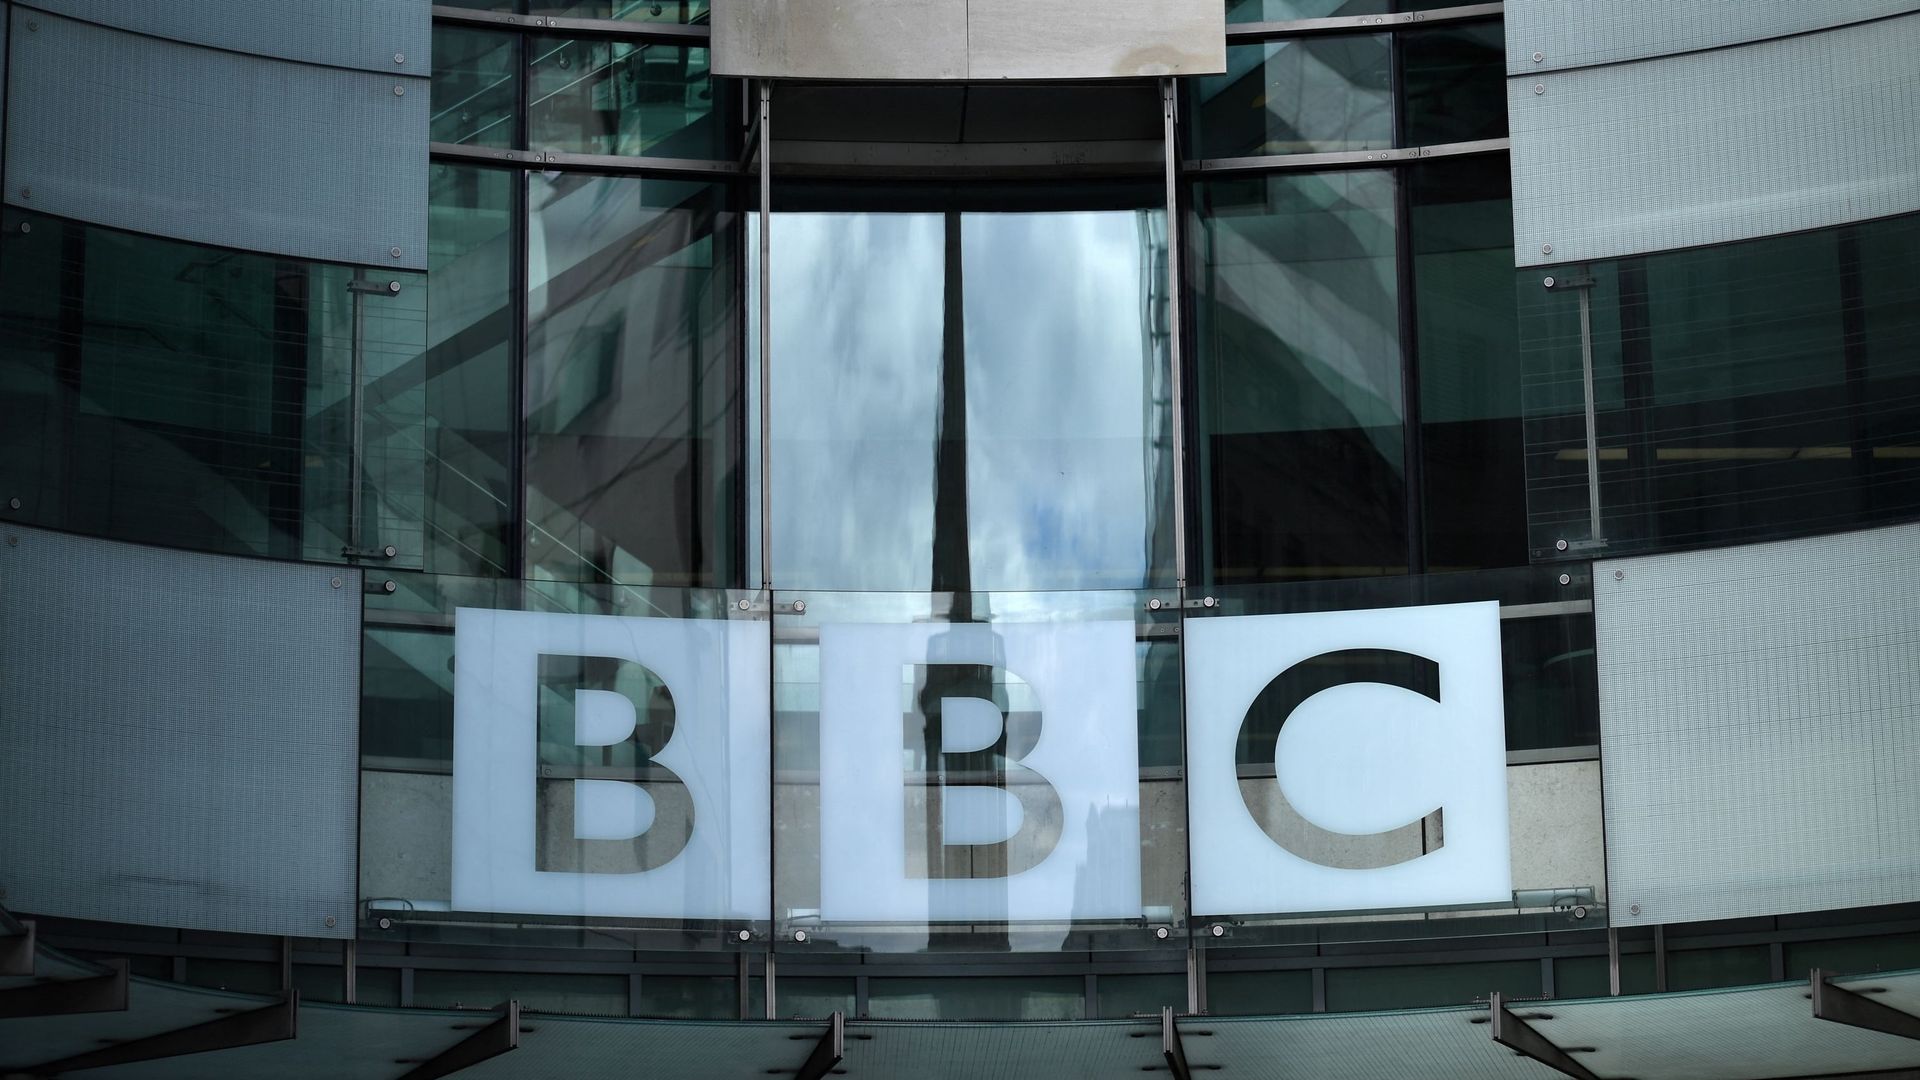 BBC World News interdit en Chine pour des "contenus en violation de la loi"